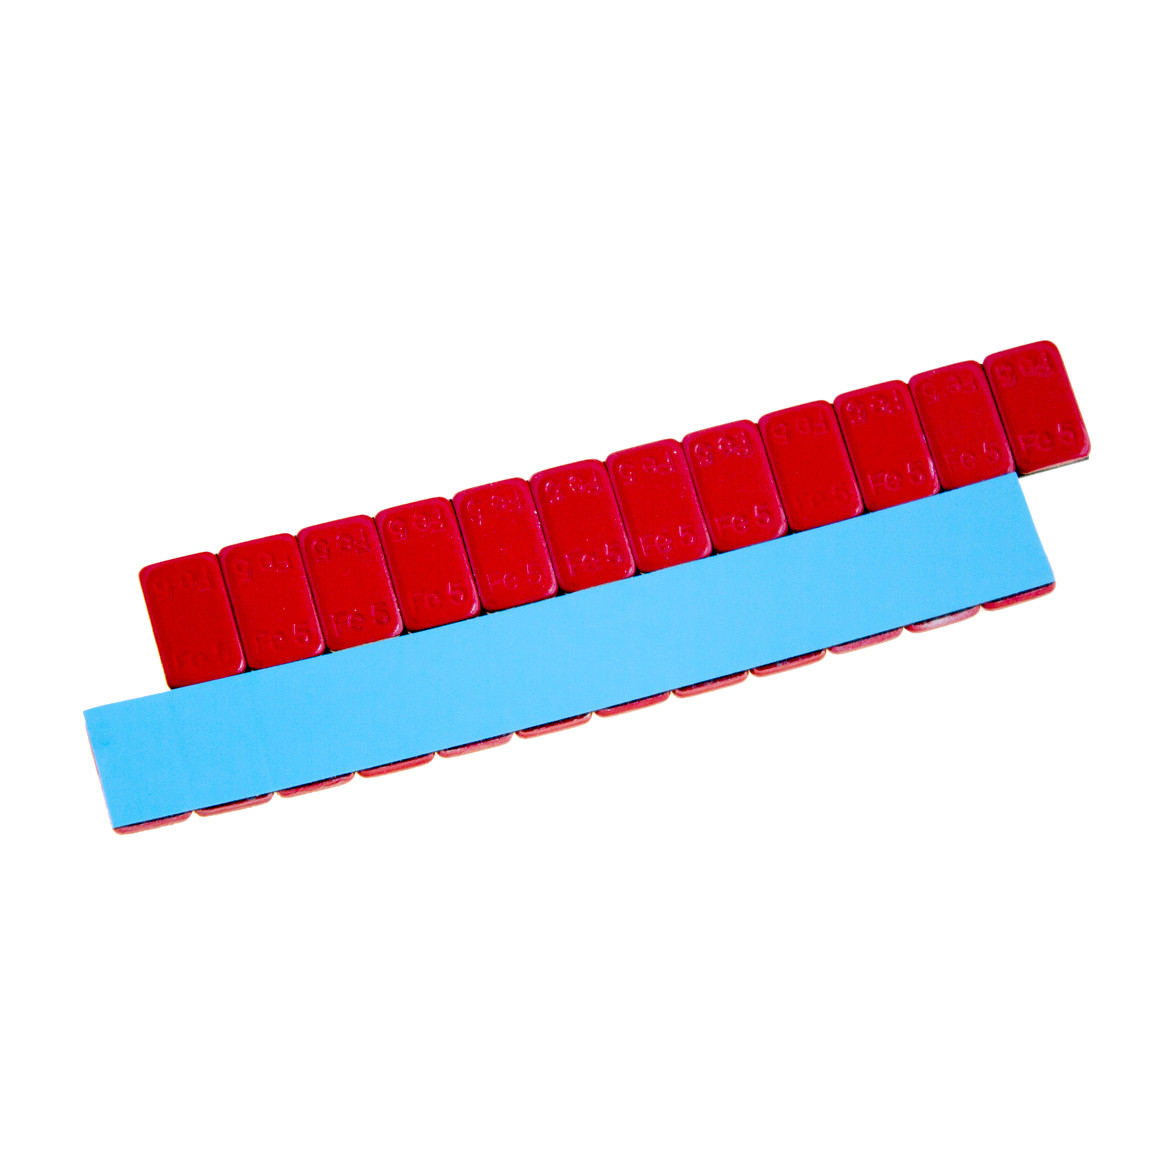 Груза адгезивные Fe 071R 12×5 гр (Синий скотч) (Красная эмаль)